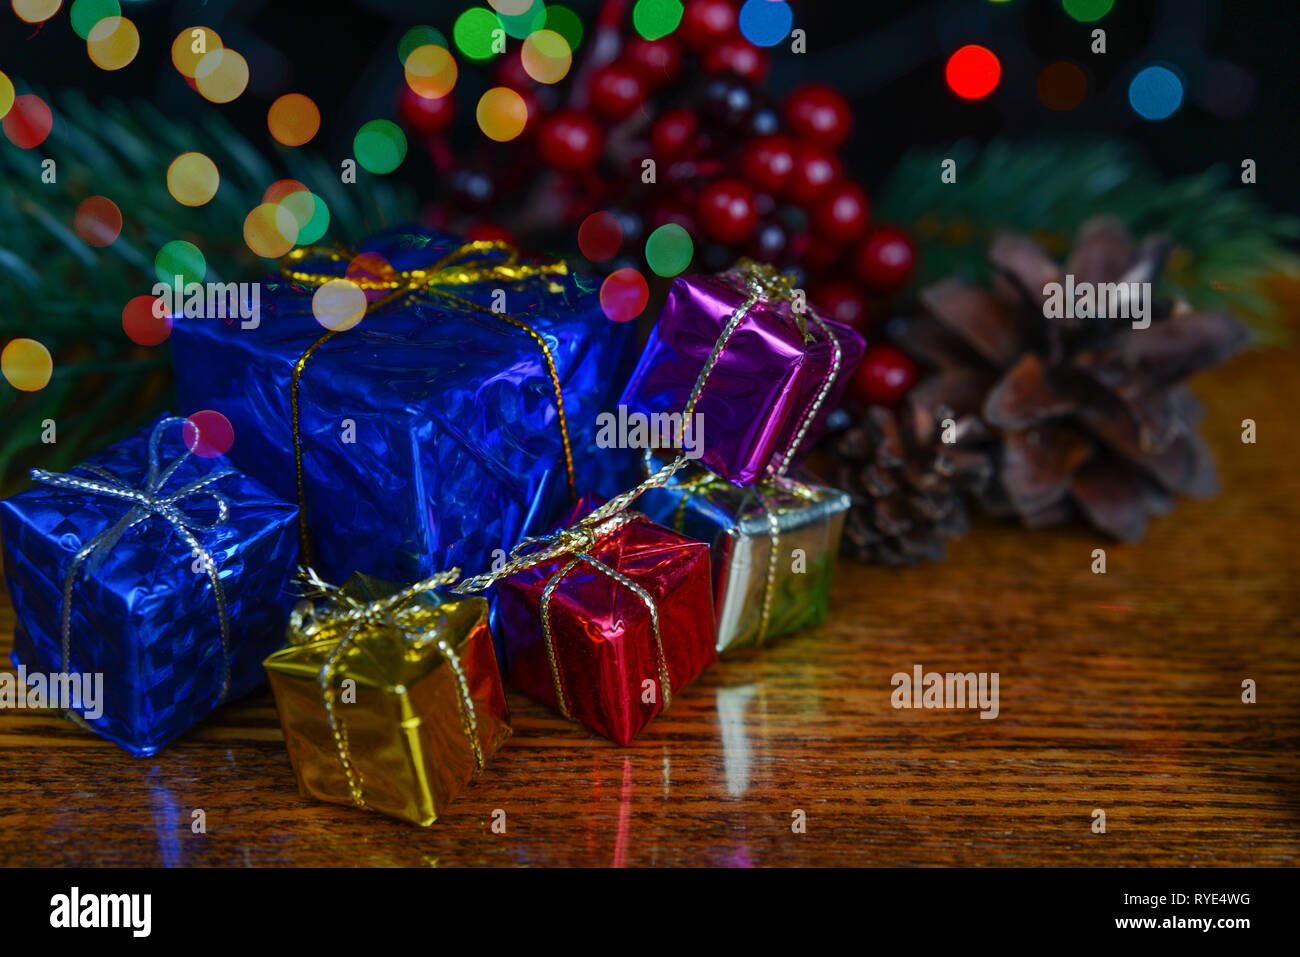 Des boîtes-cadeaux, branches d'épinettes et des baies de houx comme une composition de Noël Banque D'Images